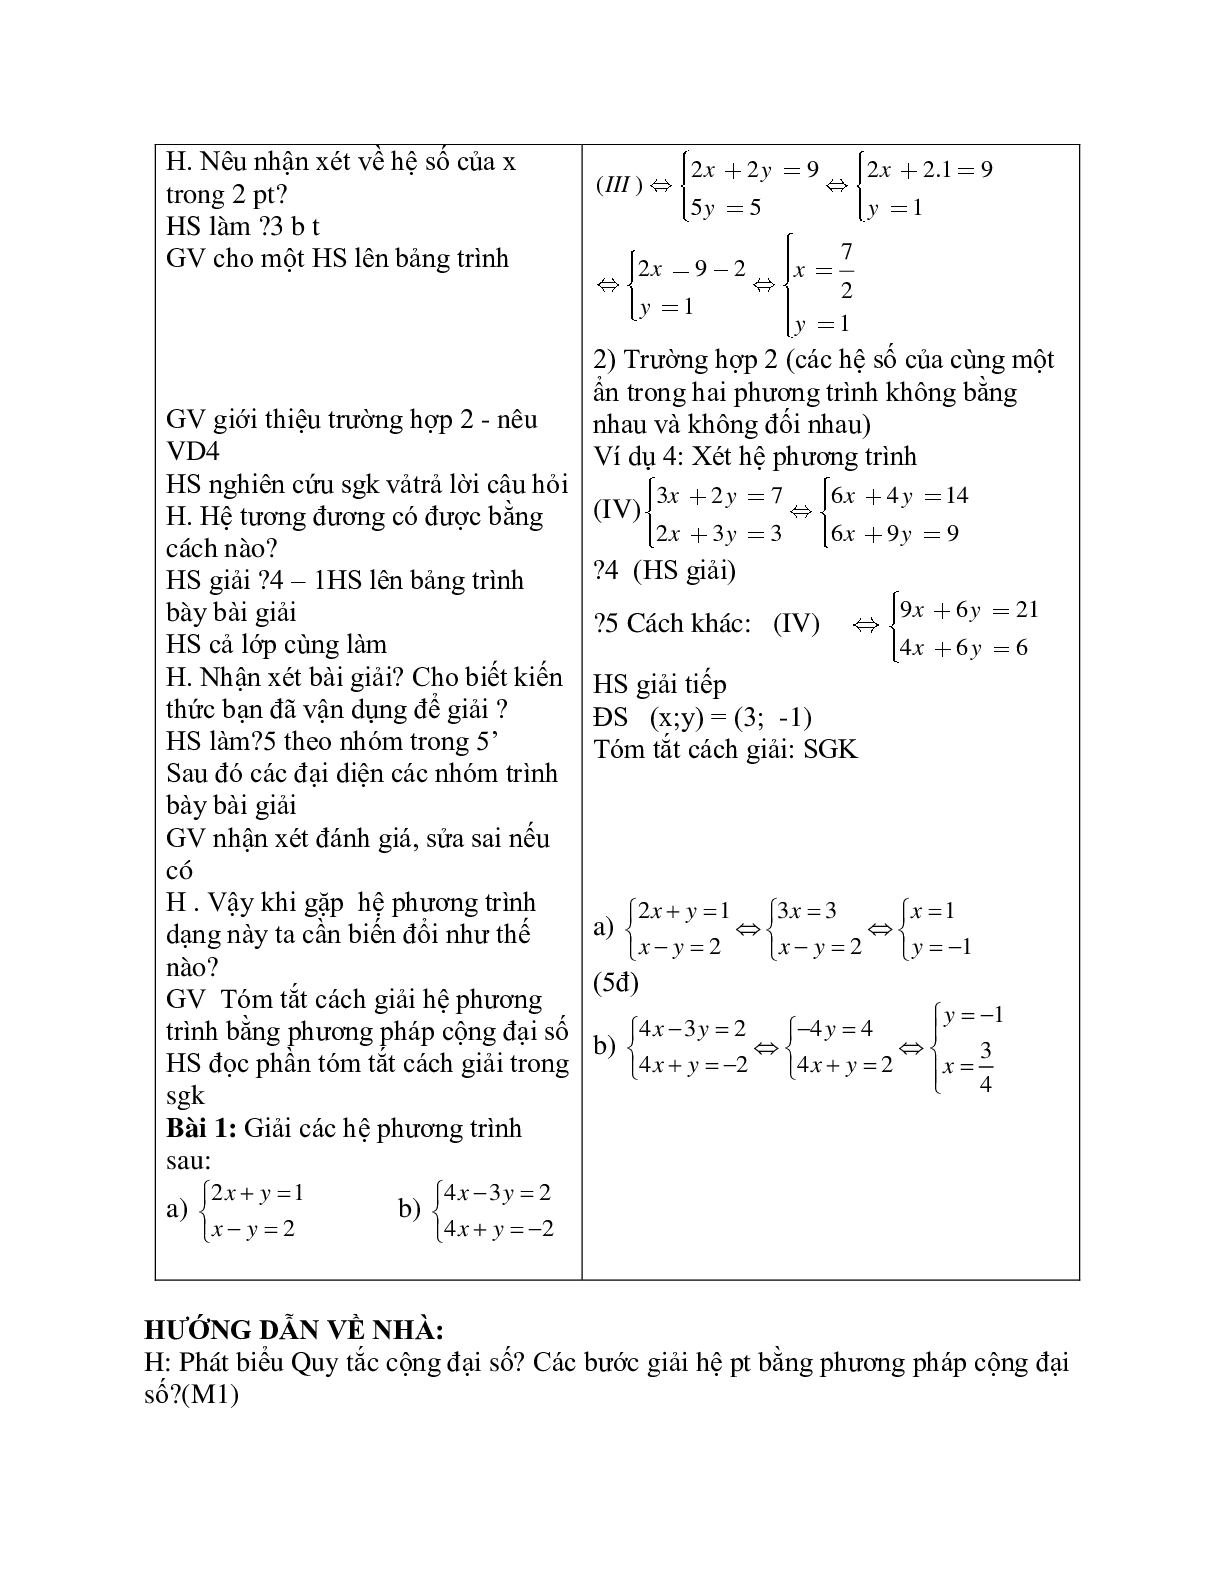 Giáo án Giải hệ phương trình bằng phương pháp cộng đại số (2023) mới nhất - Toán 9 (trang 3)